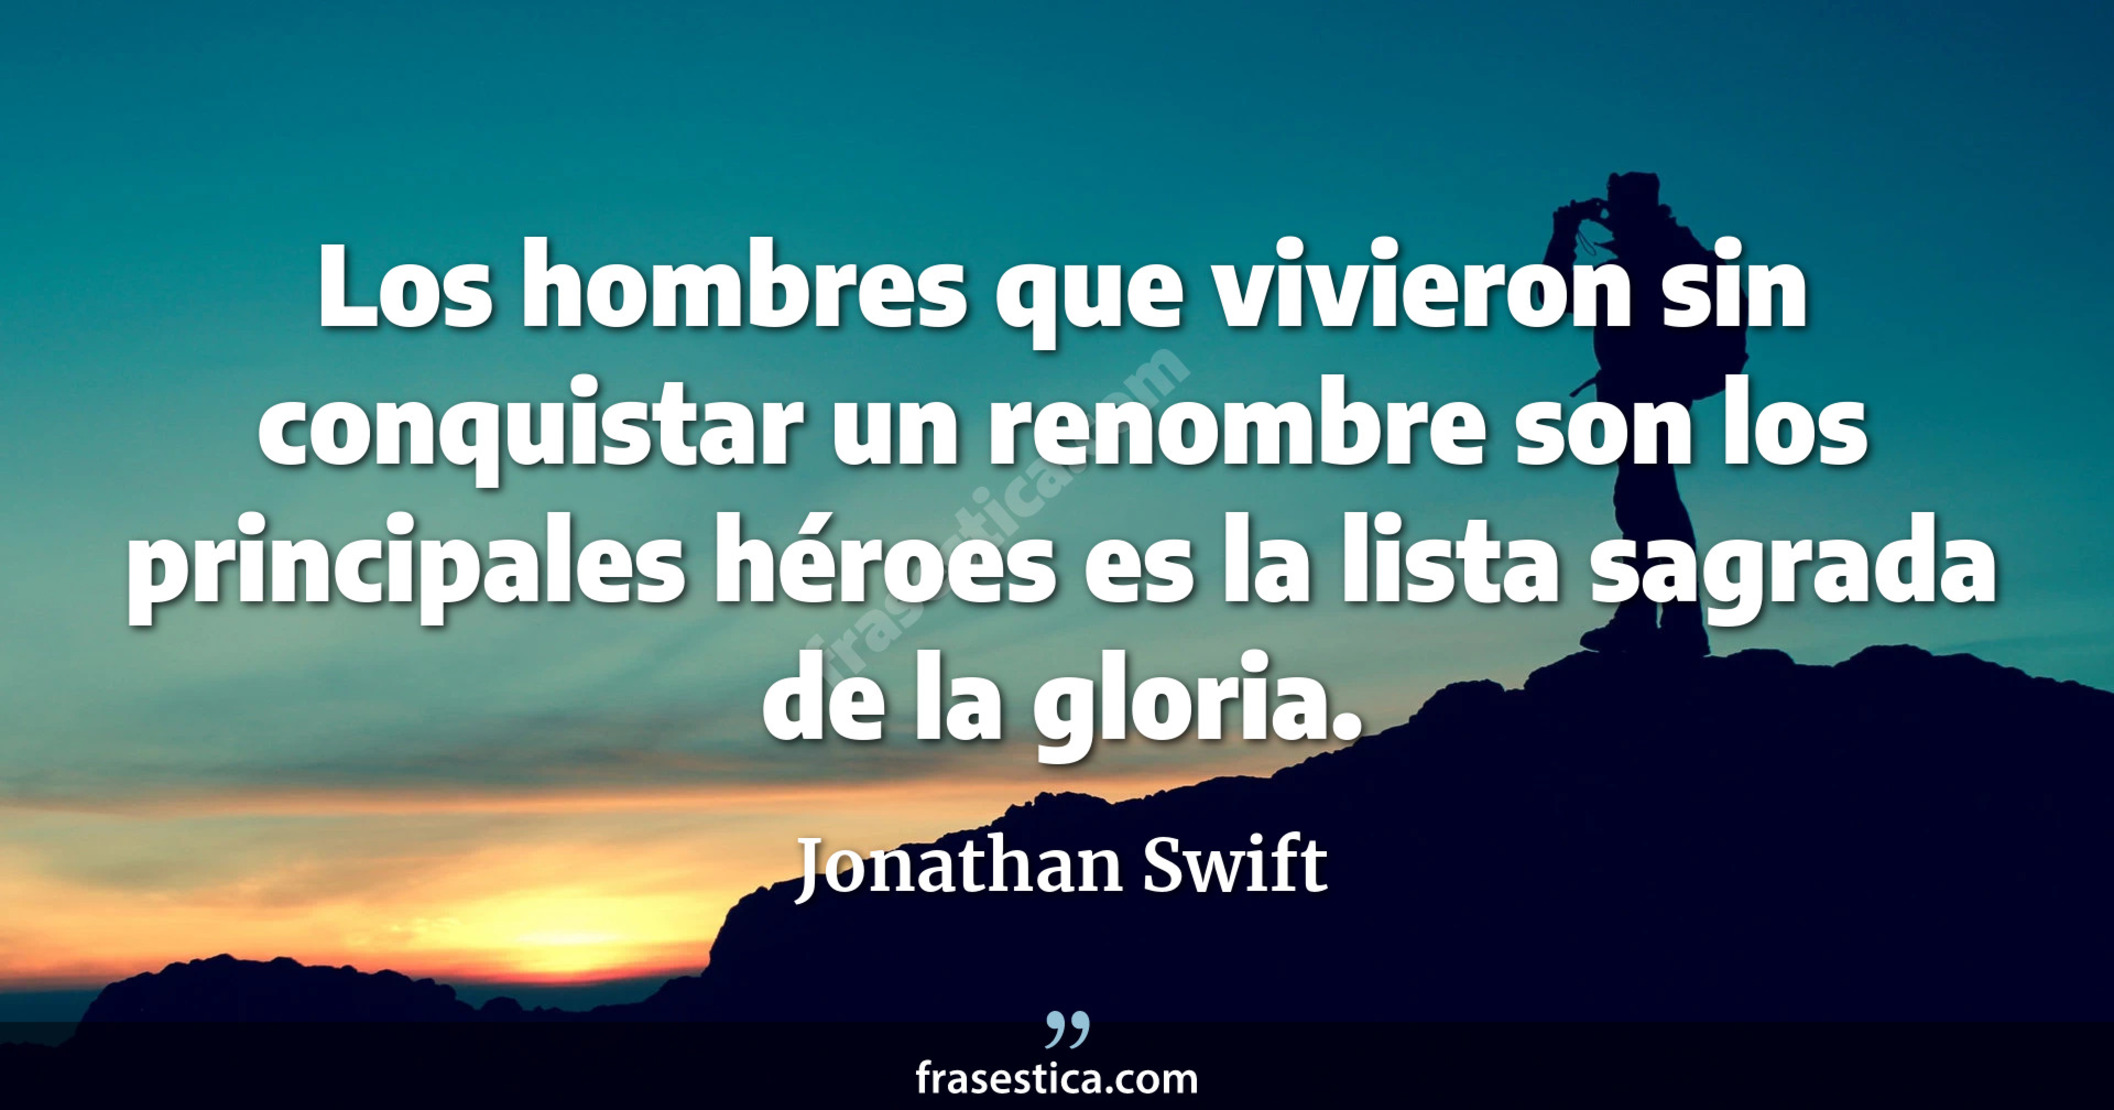 Los hombres que vivieron sin conquistar un renombre son los principales héroes es la lista sagrada de la gloria. - Jonathan Swift